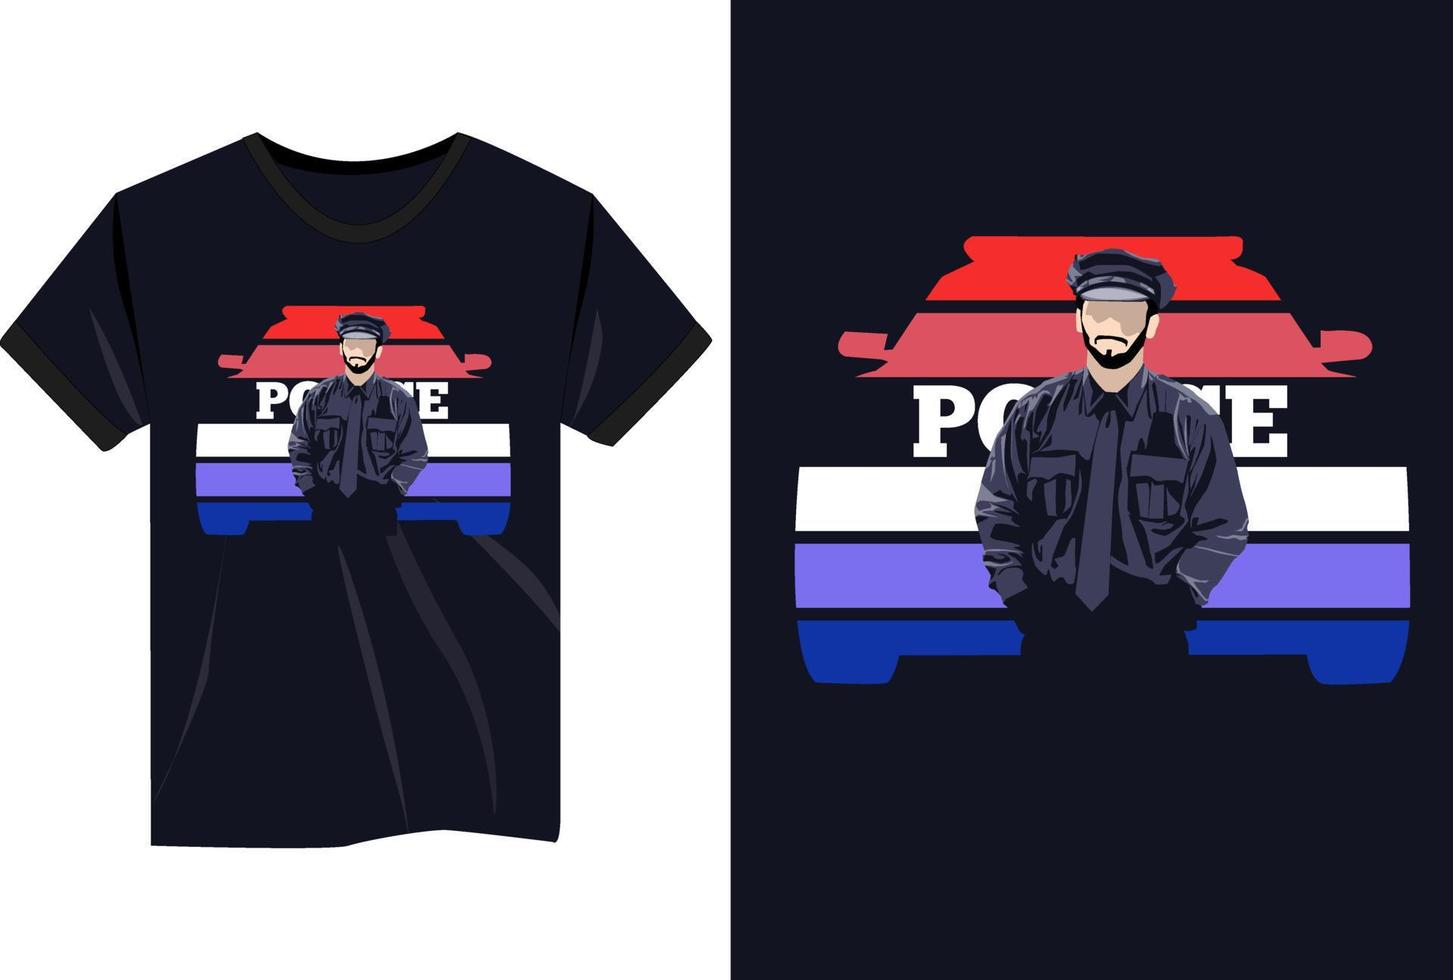 serverad t-shirt för höger polisavdelning vektor